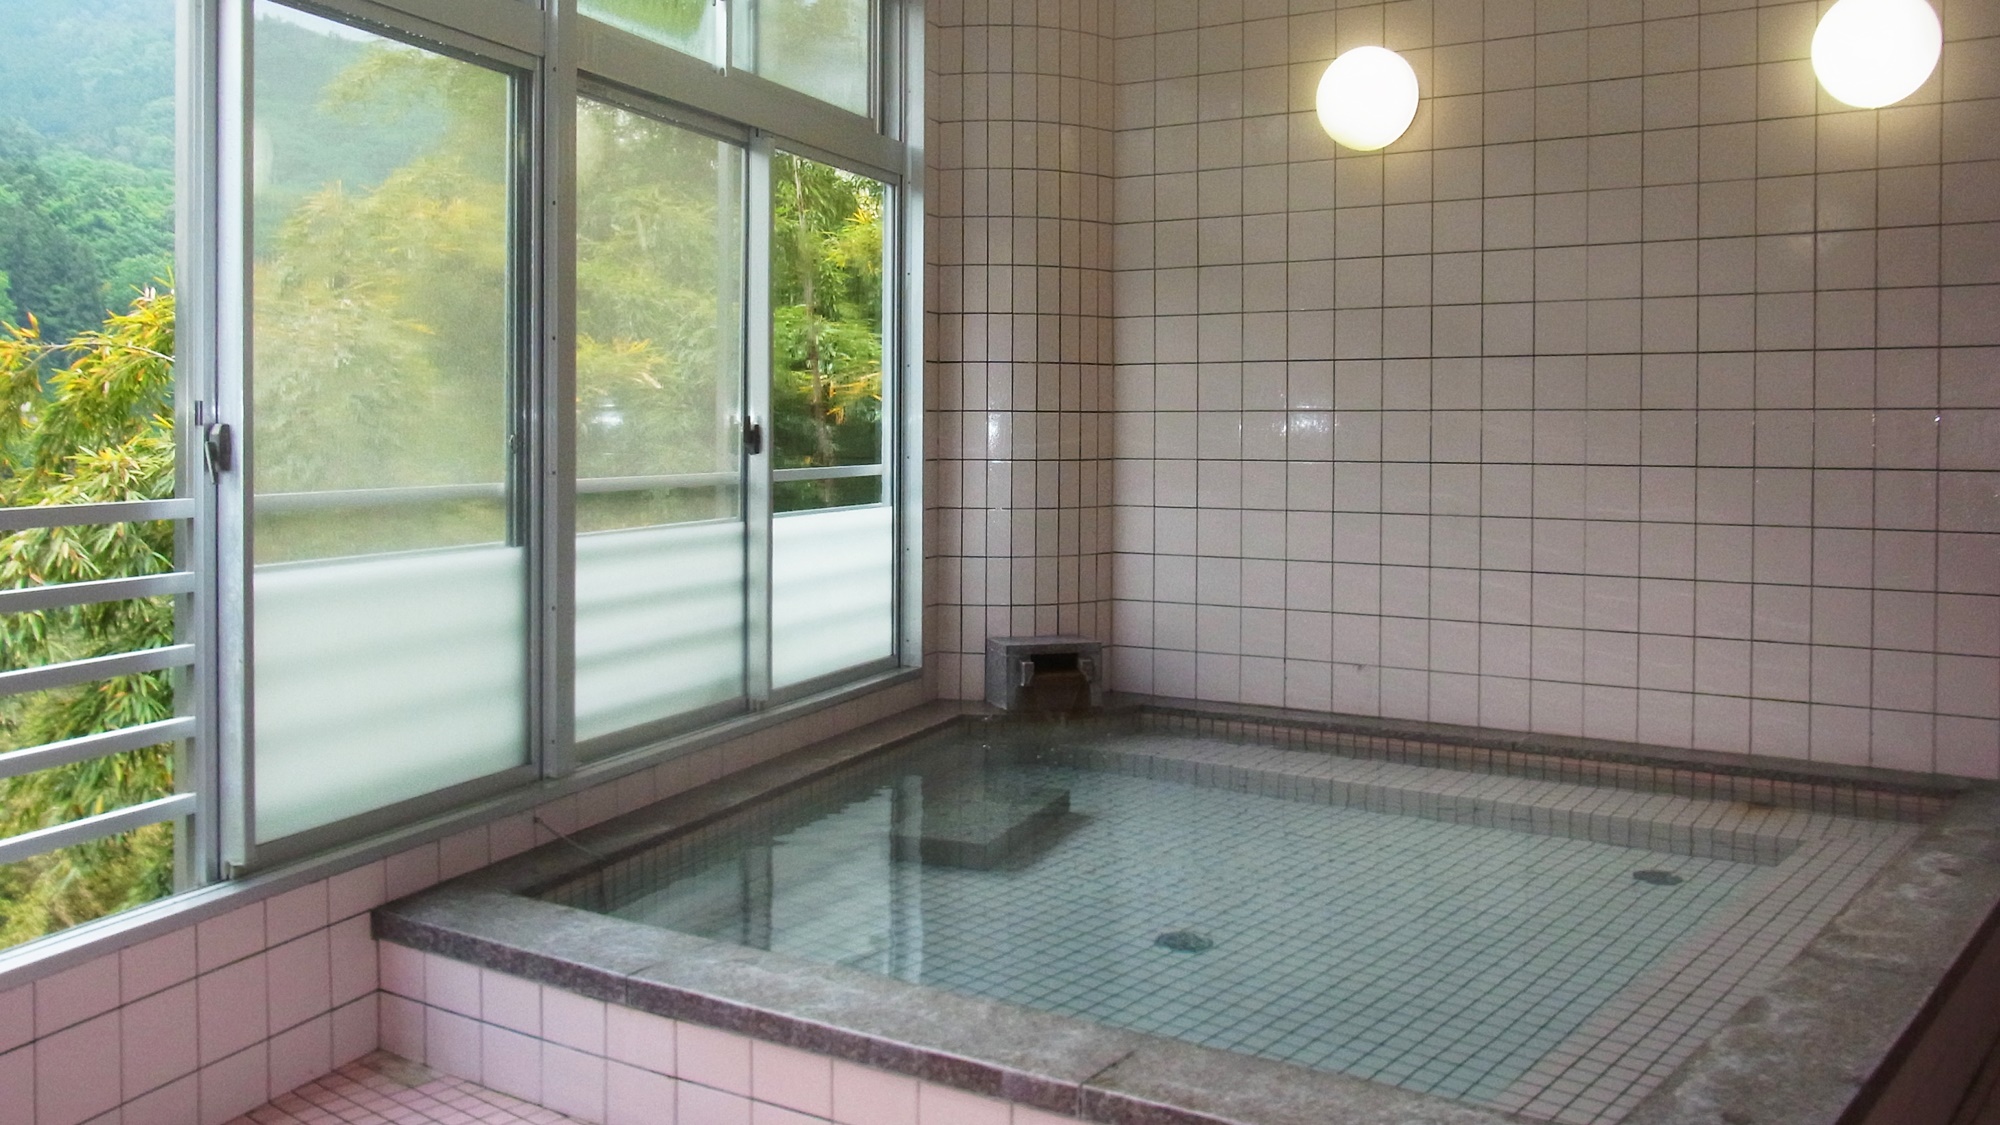 *【風呂】女湯でございます。下はスリガラス、上は普通のガラスで景色が眺められます。